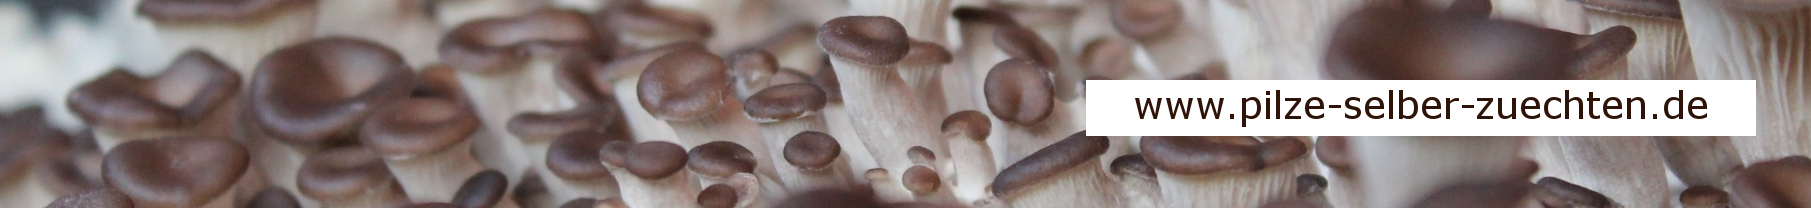 Pilze selber züchten